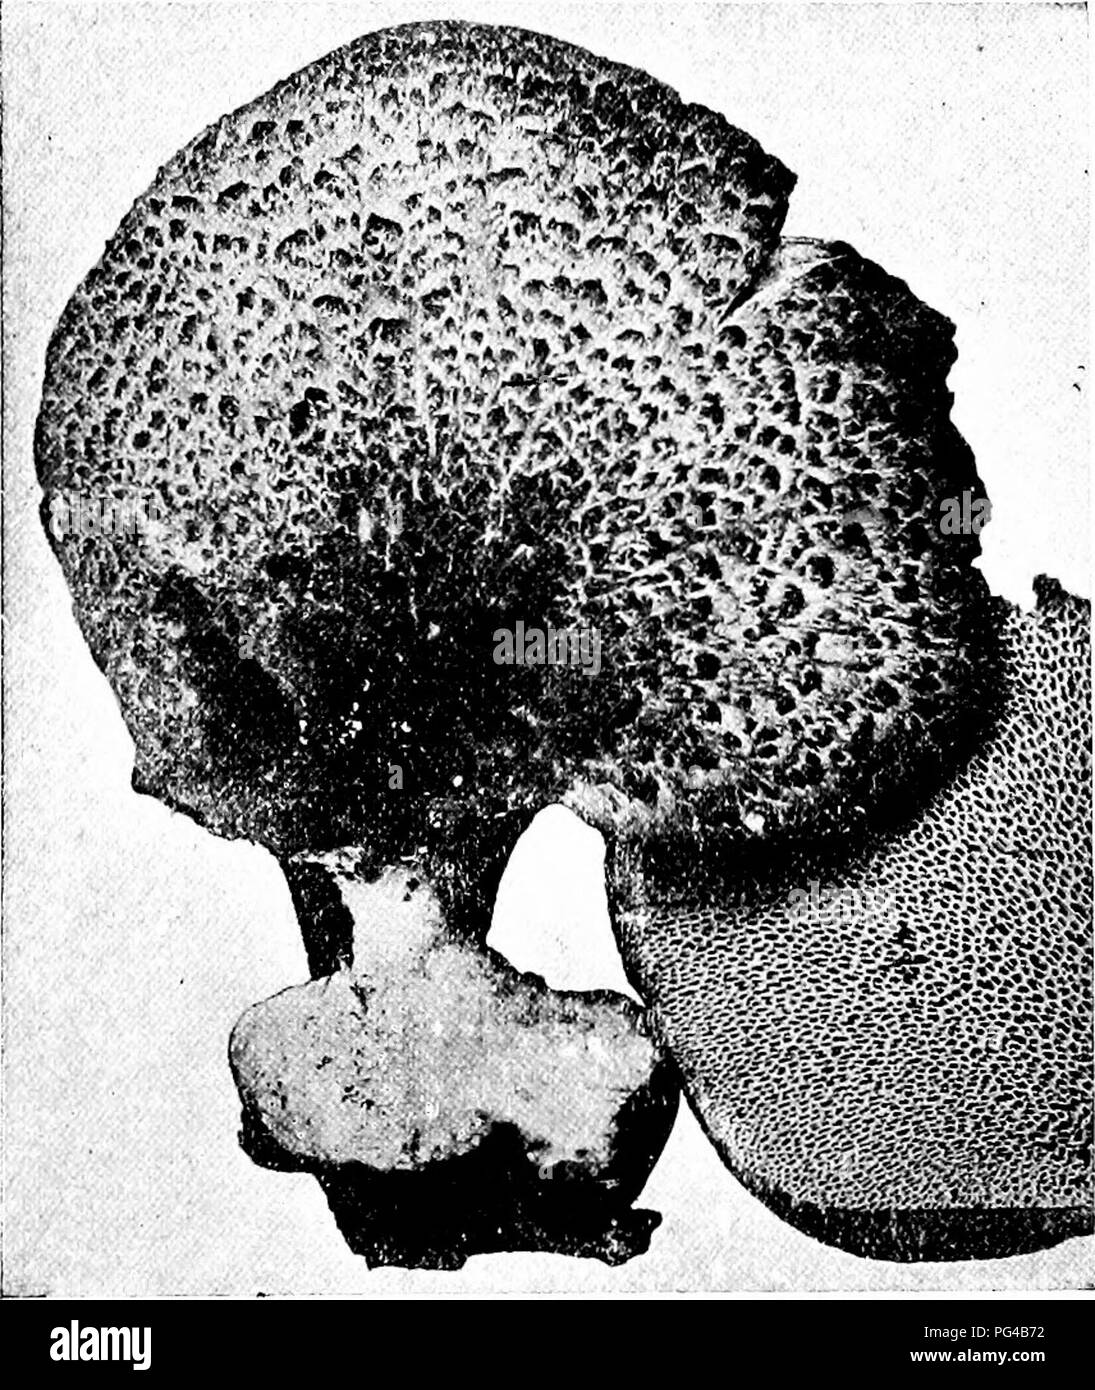 . Minnesota funghi ... La botanica; funghi. Funghi dei pori 97 Polyporus umbellatus imbuto cappucci di ciuffo di 1-4 cm. di larghezza, in fitti ciuffi 15-20 cm., affumicato, giallastro o rossastro, liscia, dura-carnosi, regolari, più o meno premuto e imbuto-FORMA; gambi 1- 3 X /2-2 cm., spesso fork in cima, unite in una massa densa al hase ; pori piccoli, bianco. Il nome si riferisce a ombrello-come tops. Il degrado del legno e di monconi; ben aromatizzato. Polyporus frondosus ventola cappucci di ciuffo di 1-5 cm. di larghezza, ciuffi 15-30 cm., grigio a smoky, rugosa o liscia, ferma-carnosi, a ventaglio, lobate e variamente irregolare ; s Foto Stock